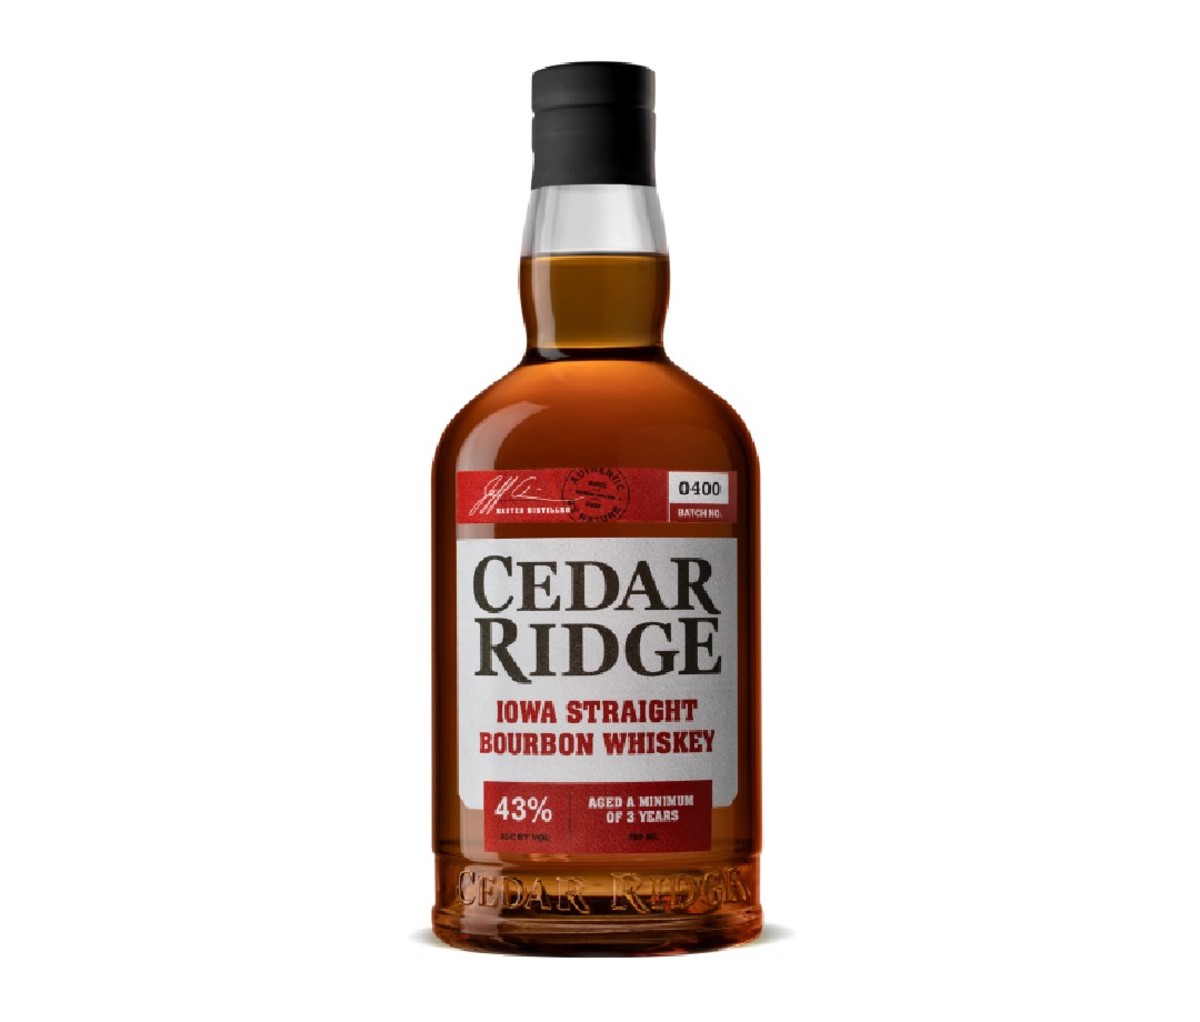 Bottle of Cedar Ridge Bourbon